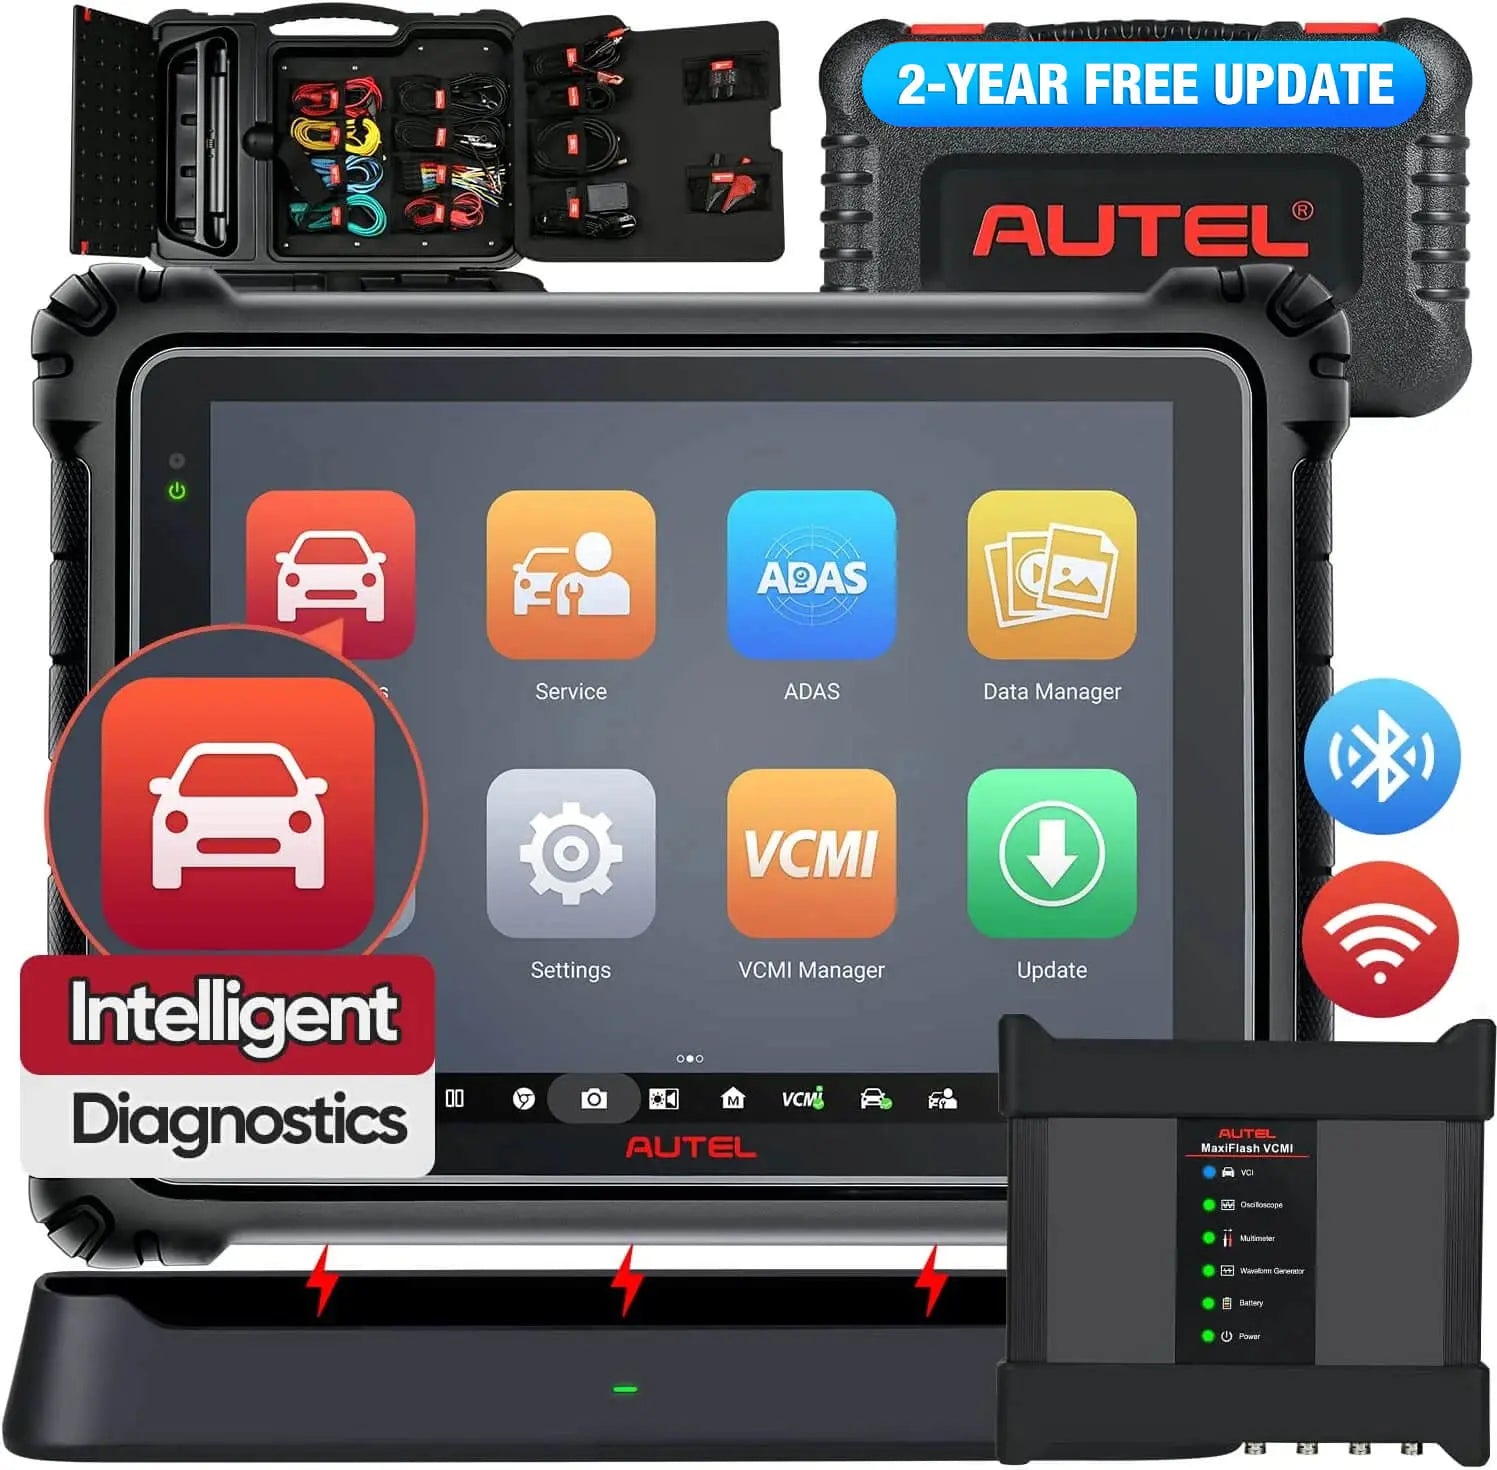  Autel MaxiSYS MS906Pro Scanner: 2023 Autel Diagnostic